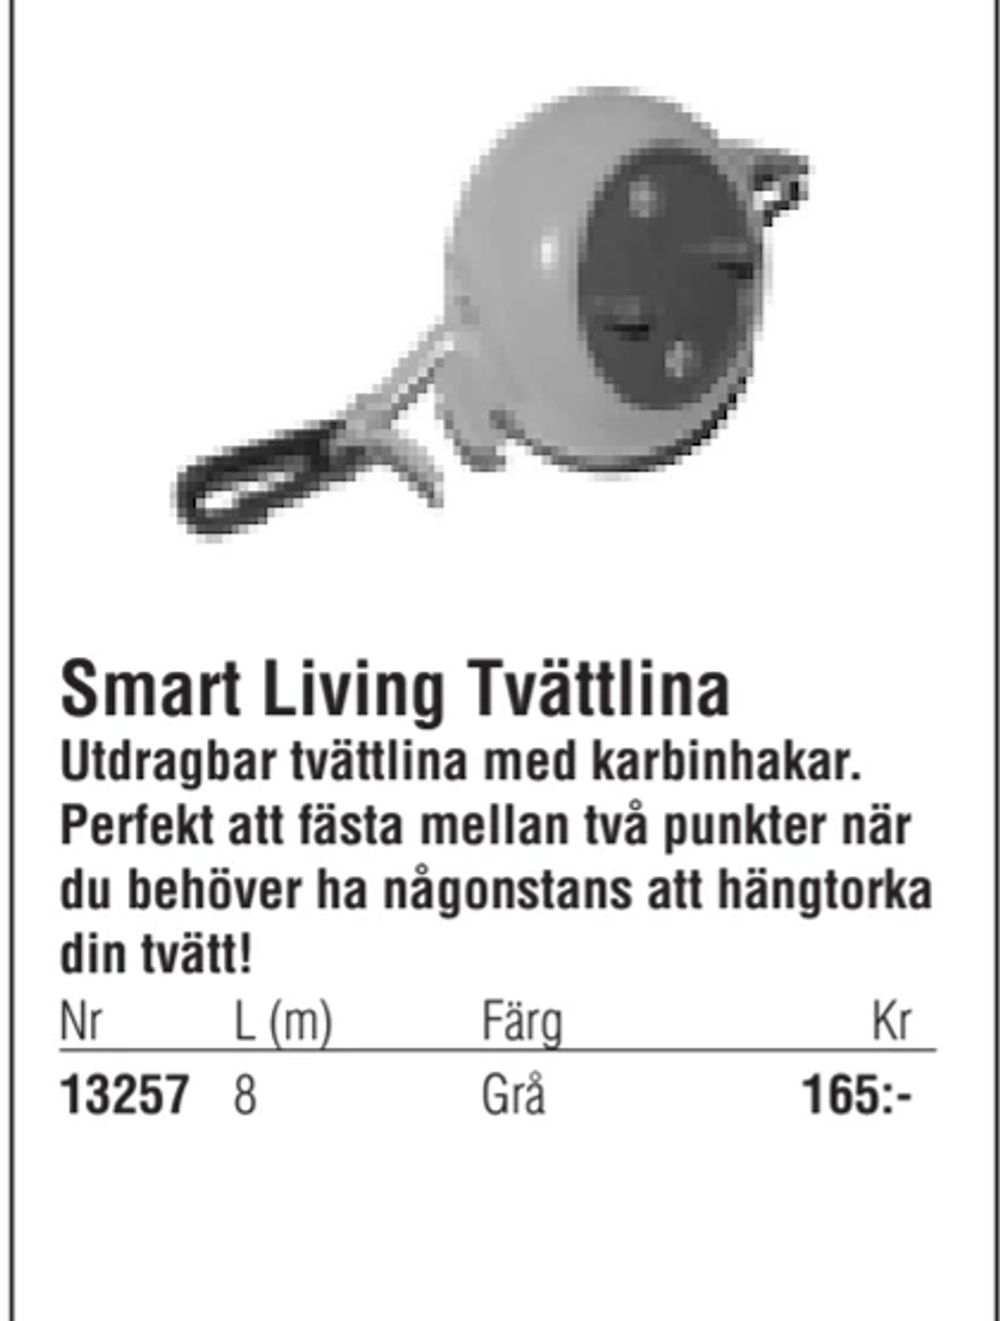 Erbjudanden på Smart Living Tvättlina från Erlandsons Brygga för 165 kr